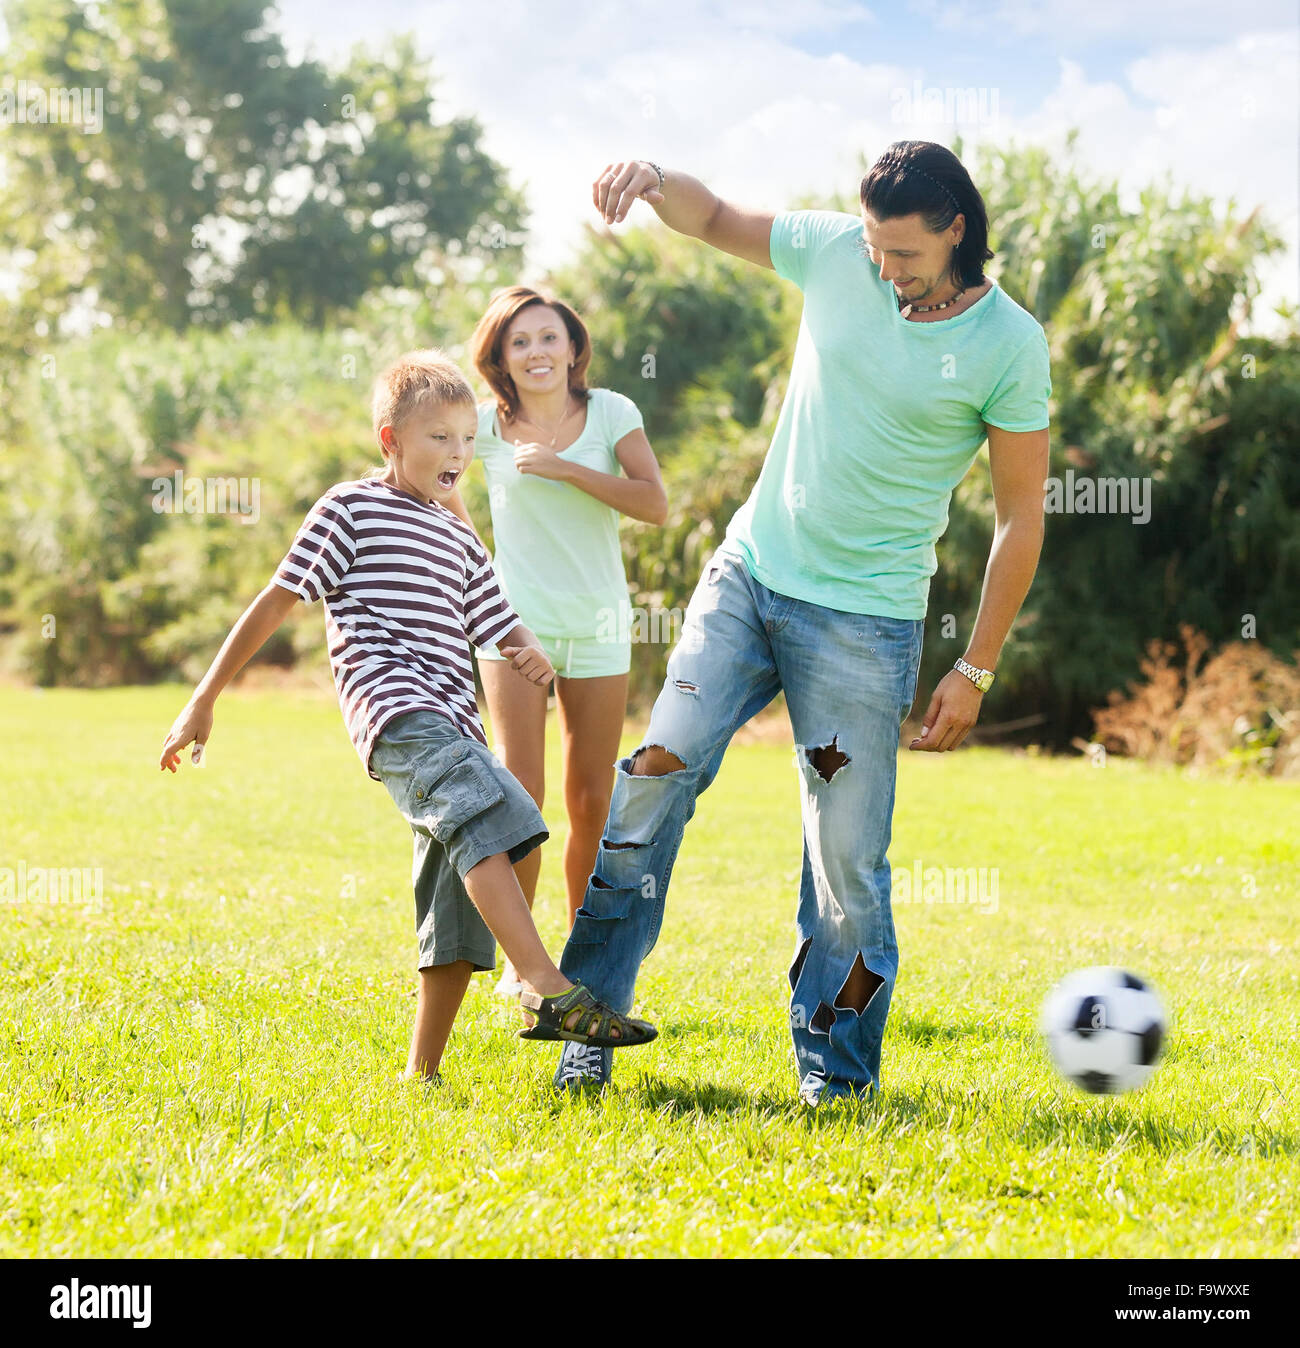 Glückliche Eltern mit Kind spielen mit Fußball im Sommerpark Stockfoto